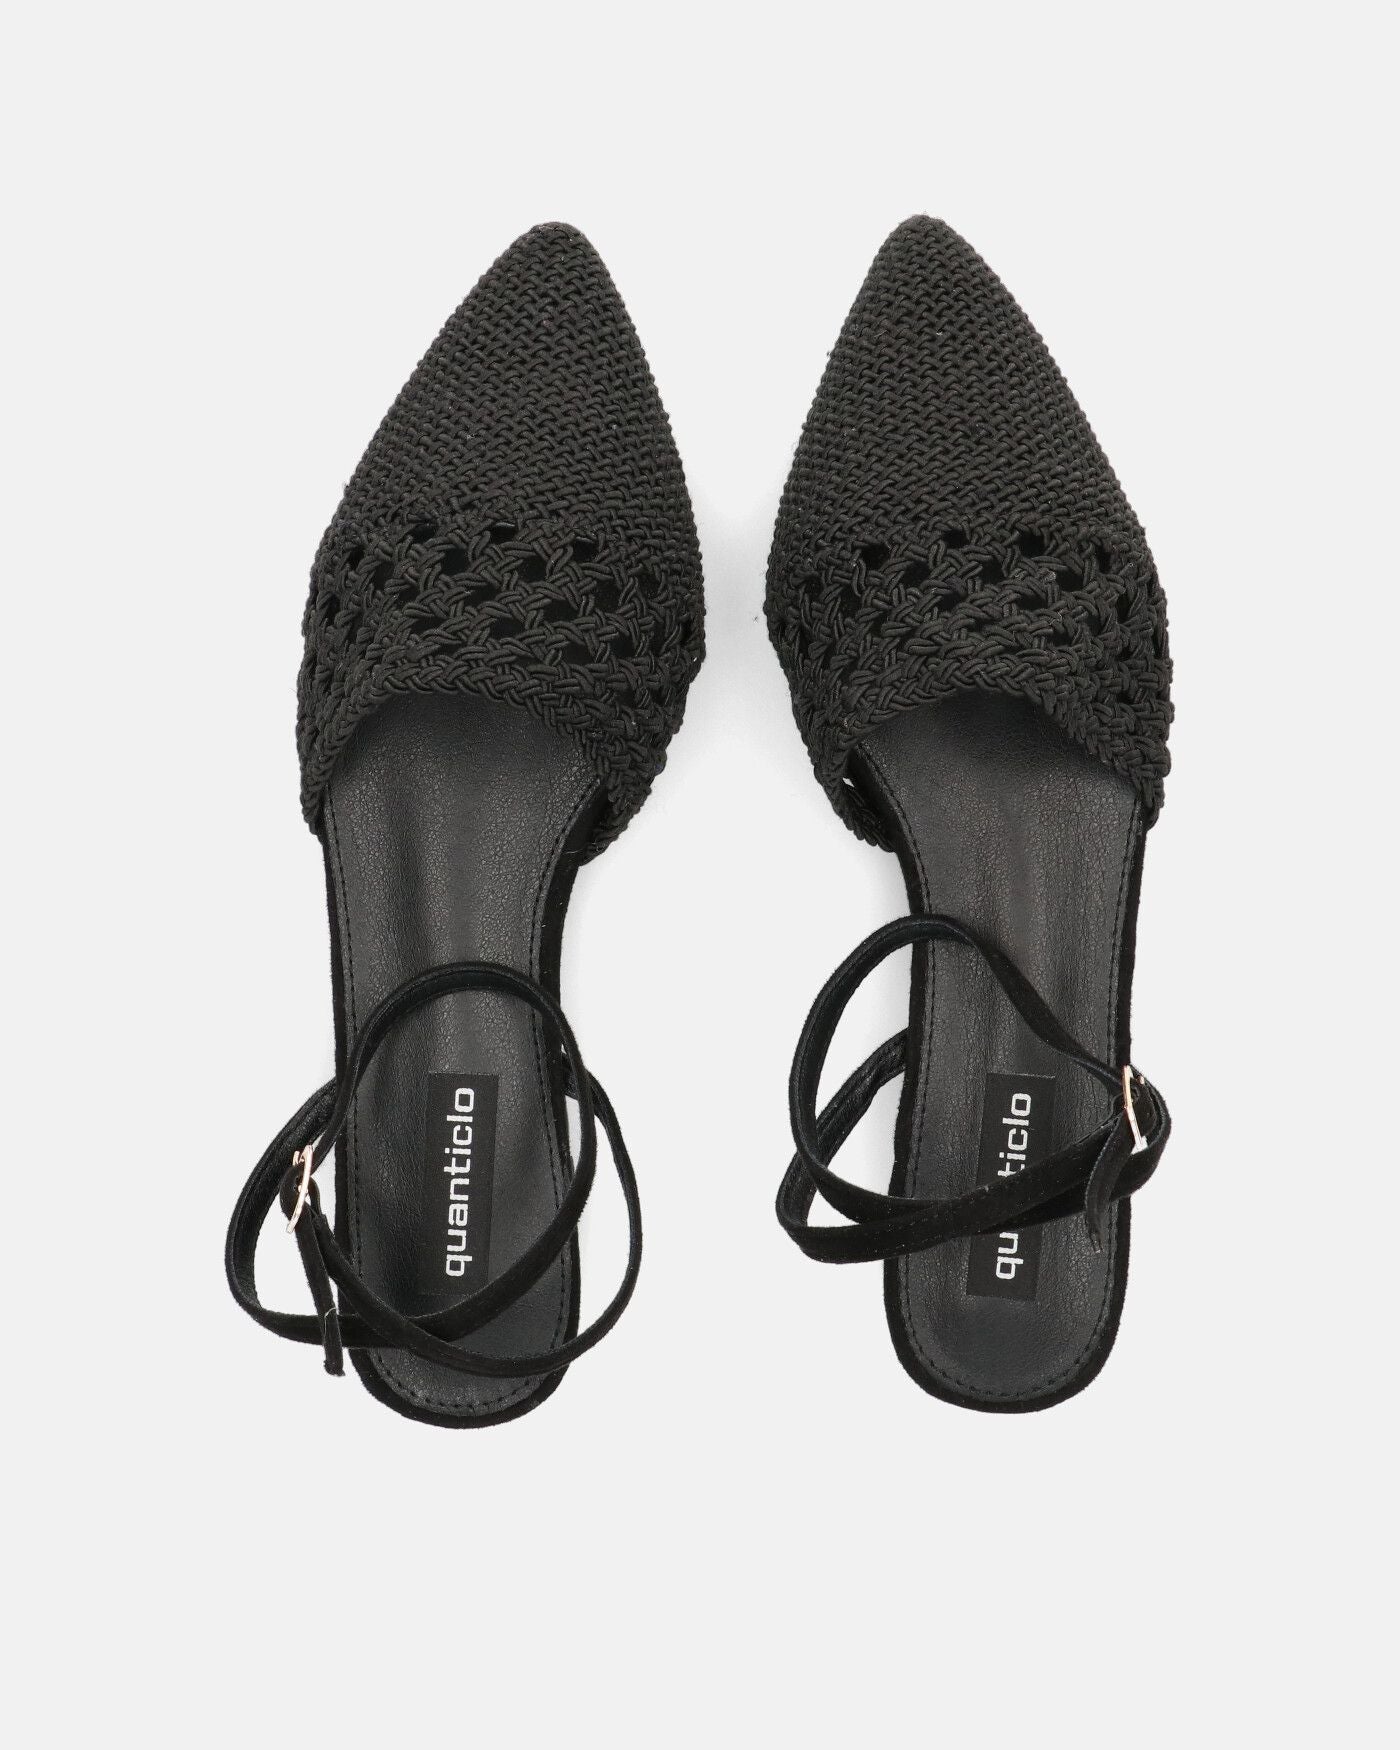 SWAMI - sandali bassi neri con decorazione